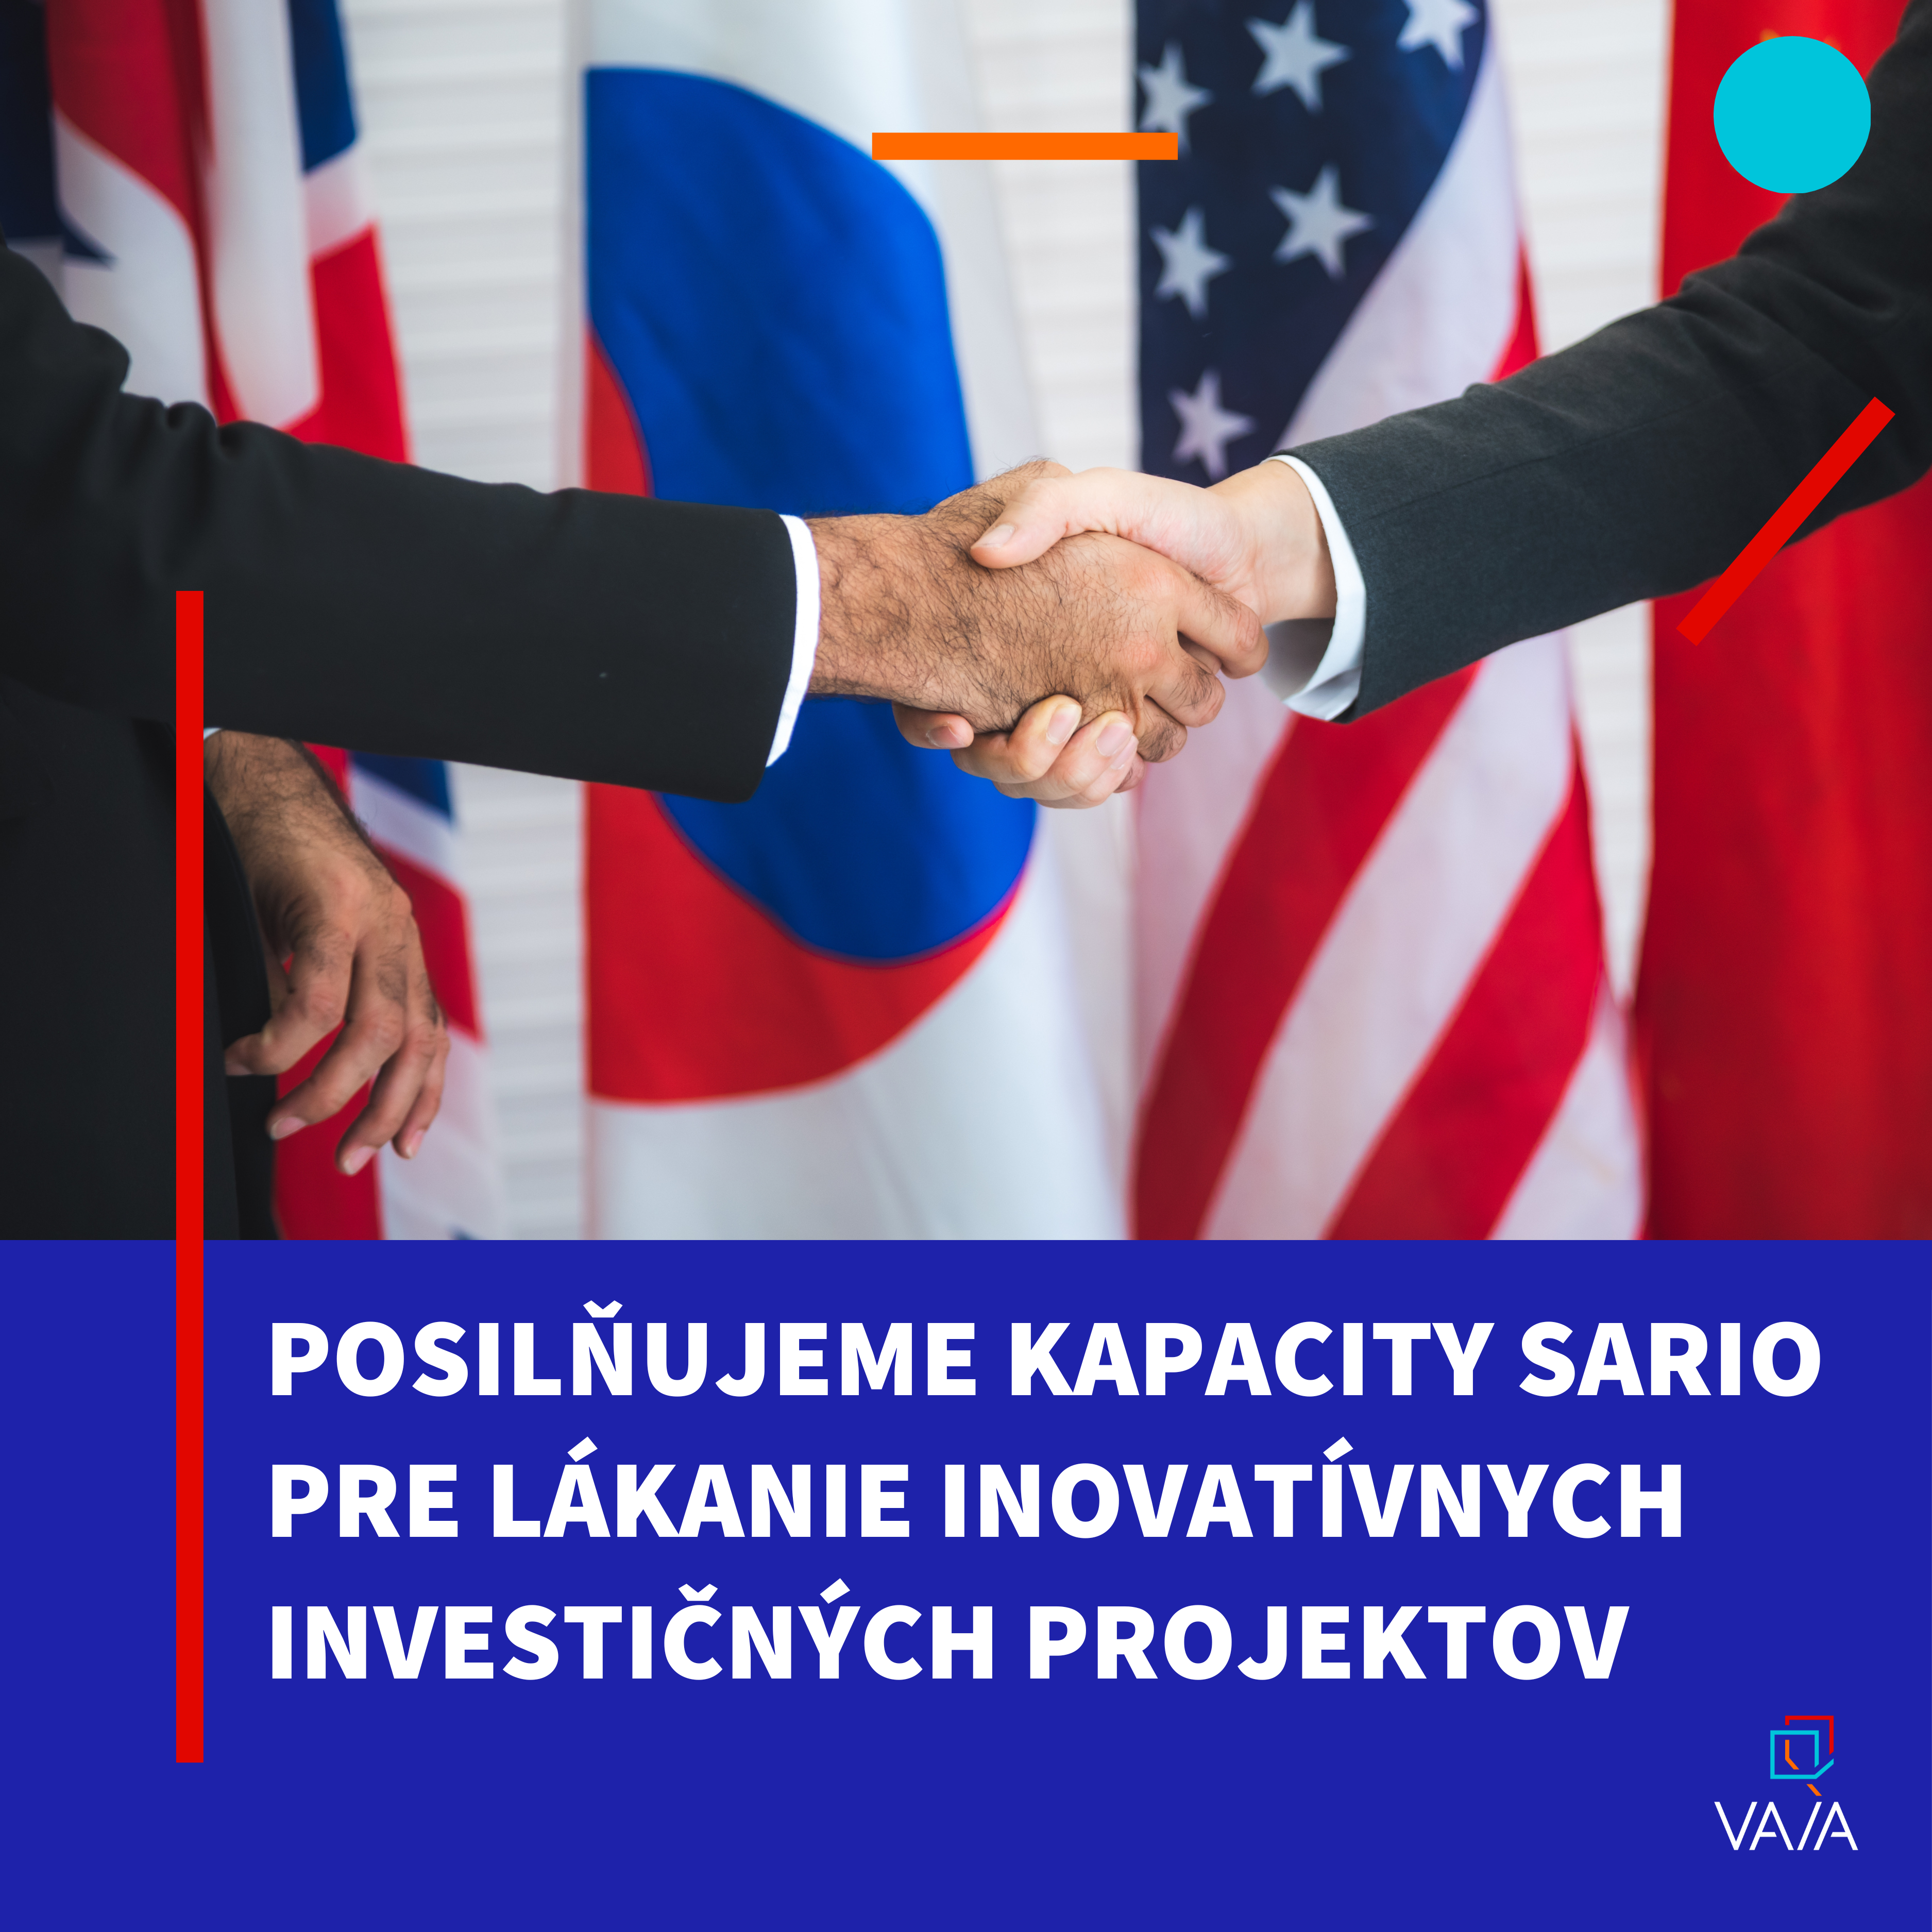 Inovačnú výkonnosť Slovenska podporujeme aj cez zvýšenie pôsobnosti SARIO v zahraničí